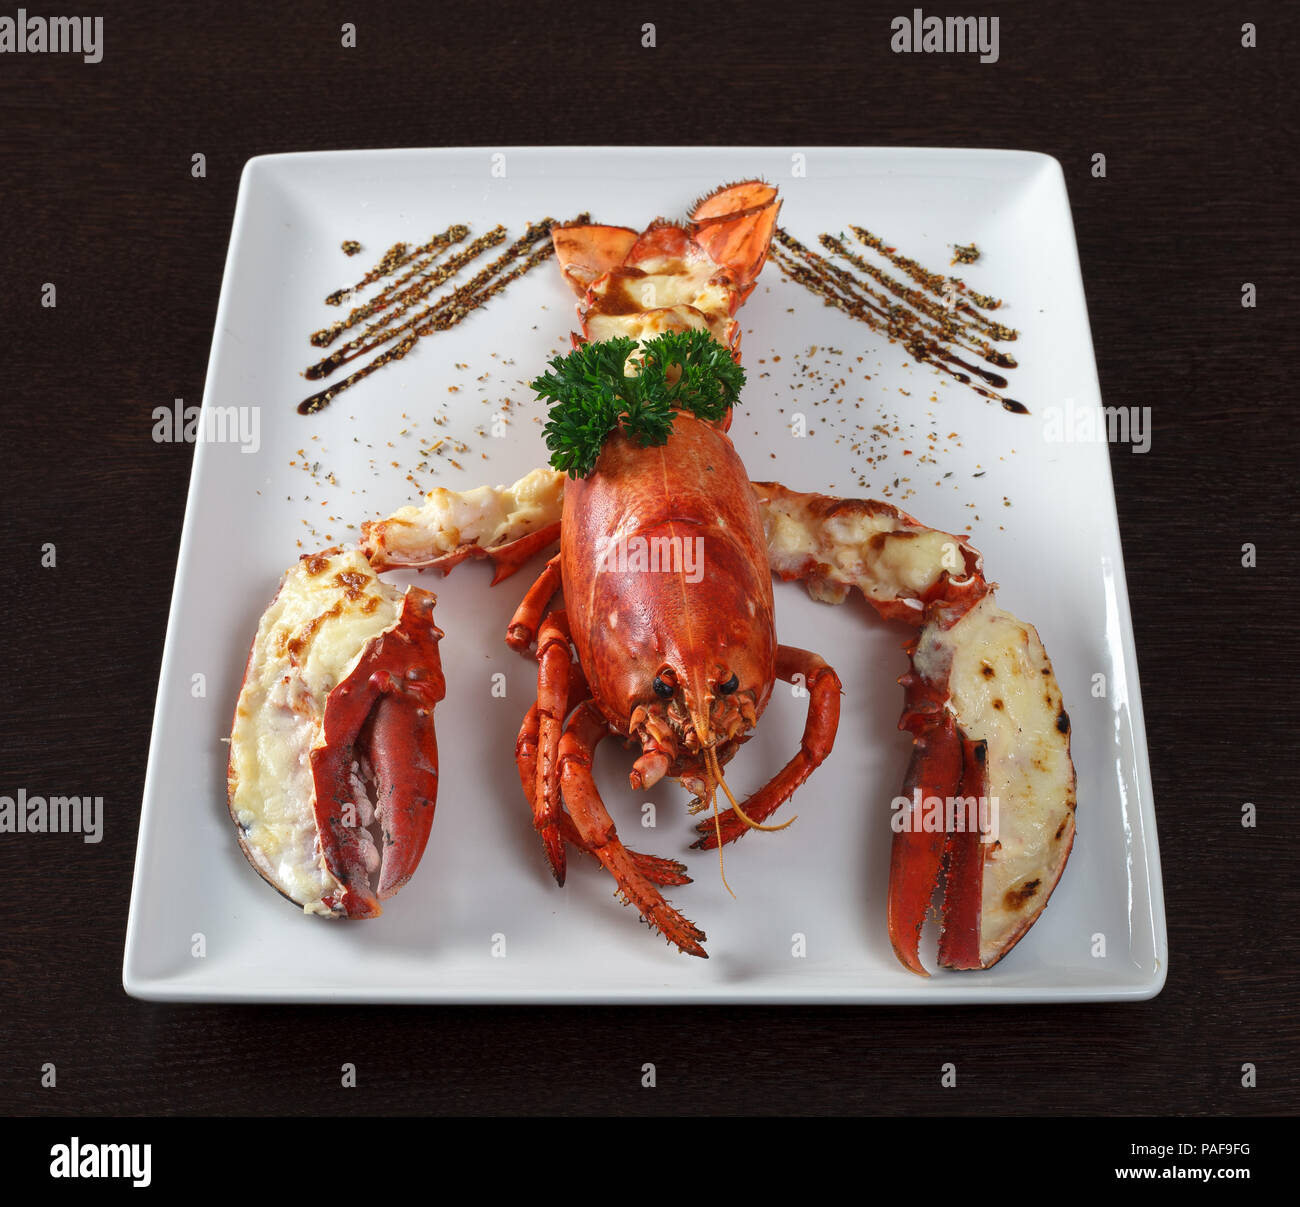 Le homard. Un plat de homard et le persil. Plaque blanche sur table en bois. Vue de côté. Banque D'Images